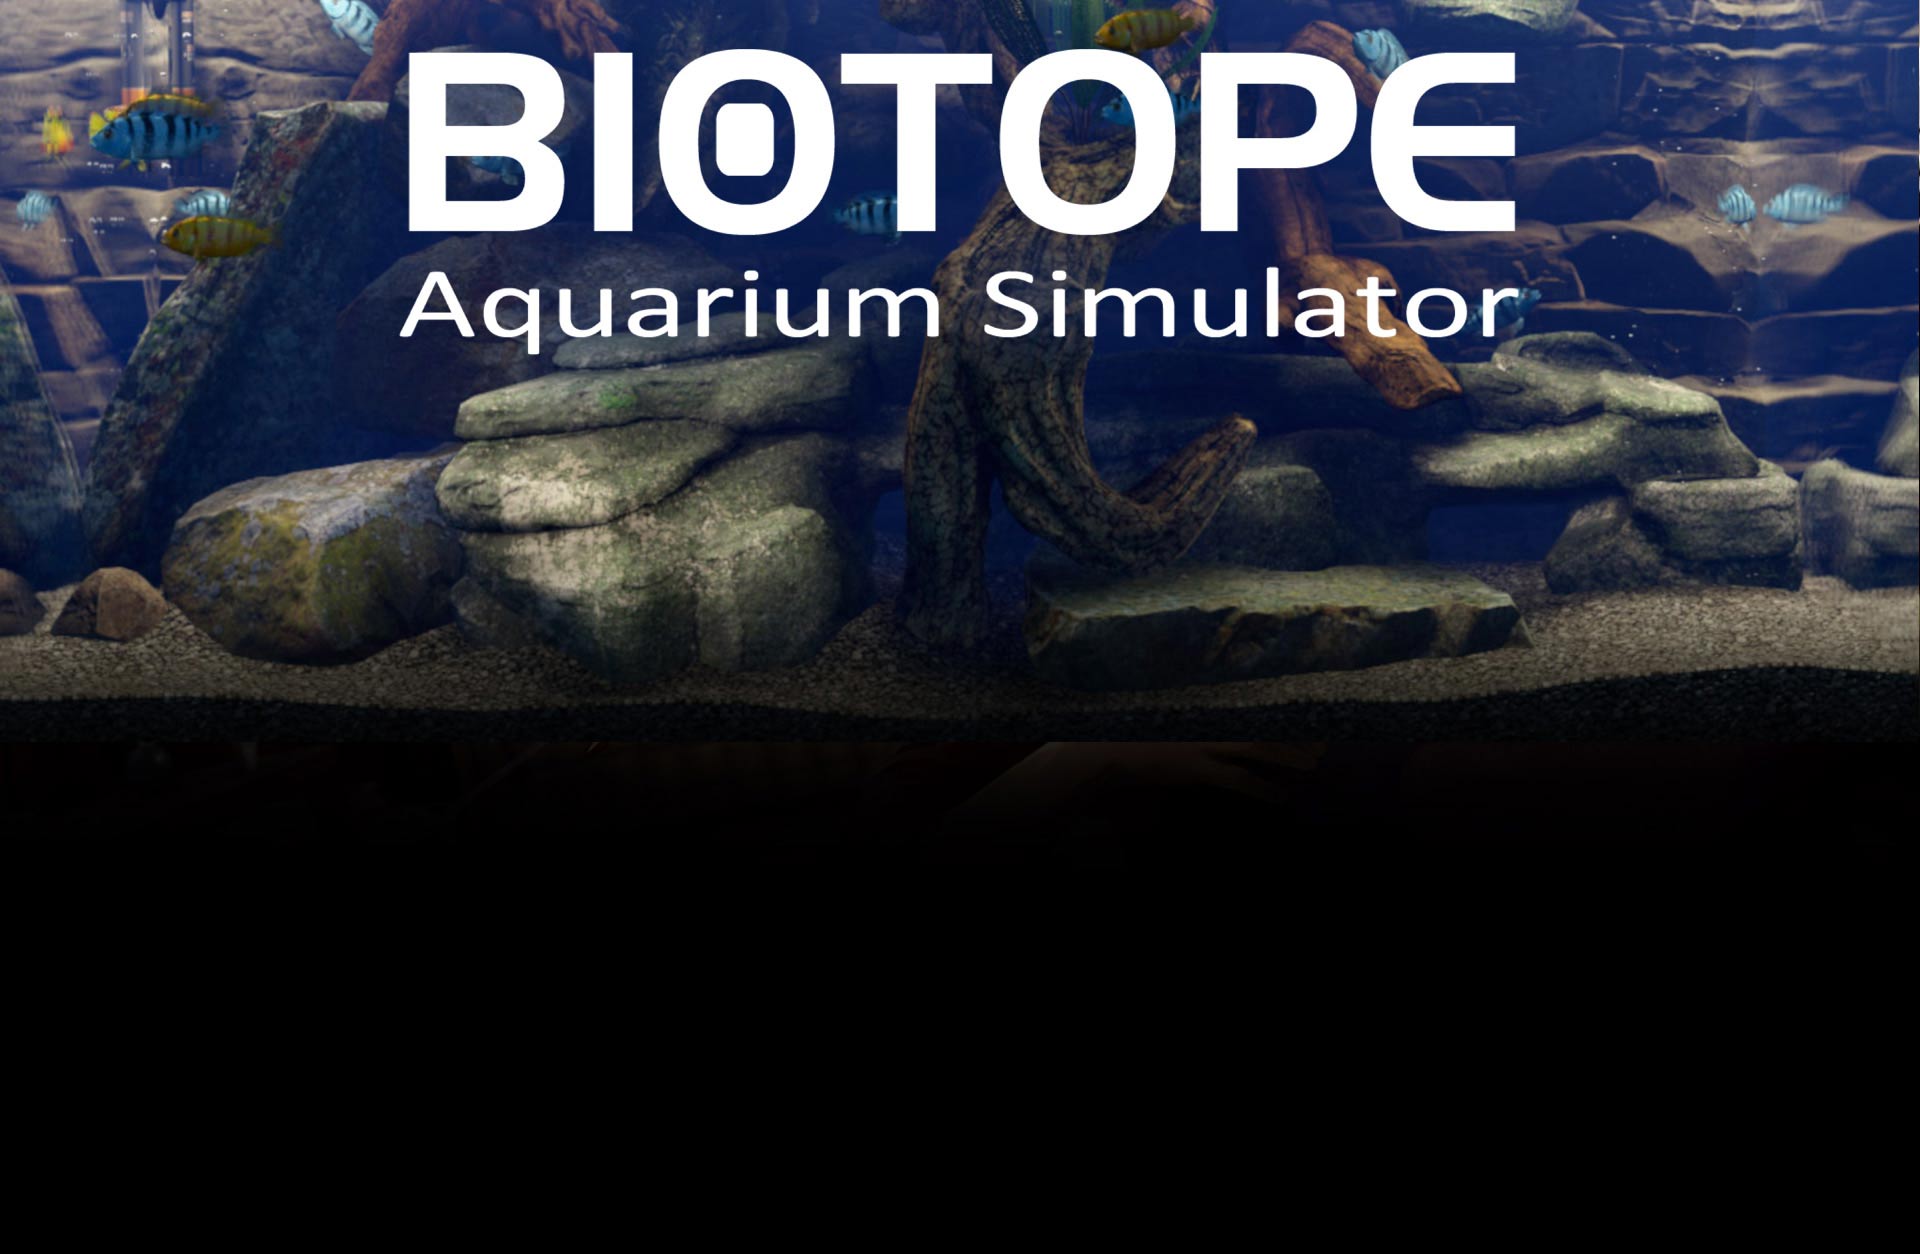 Biotope: Aquarium simulator